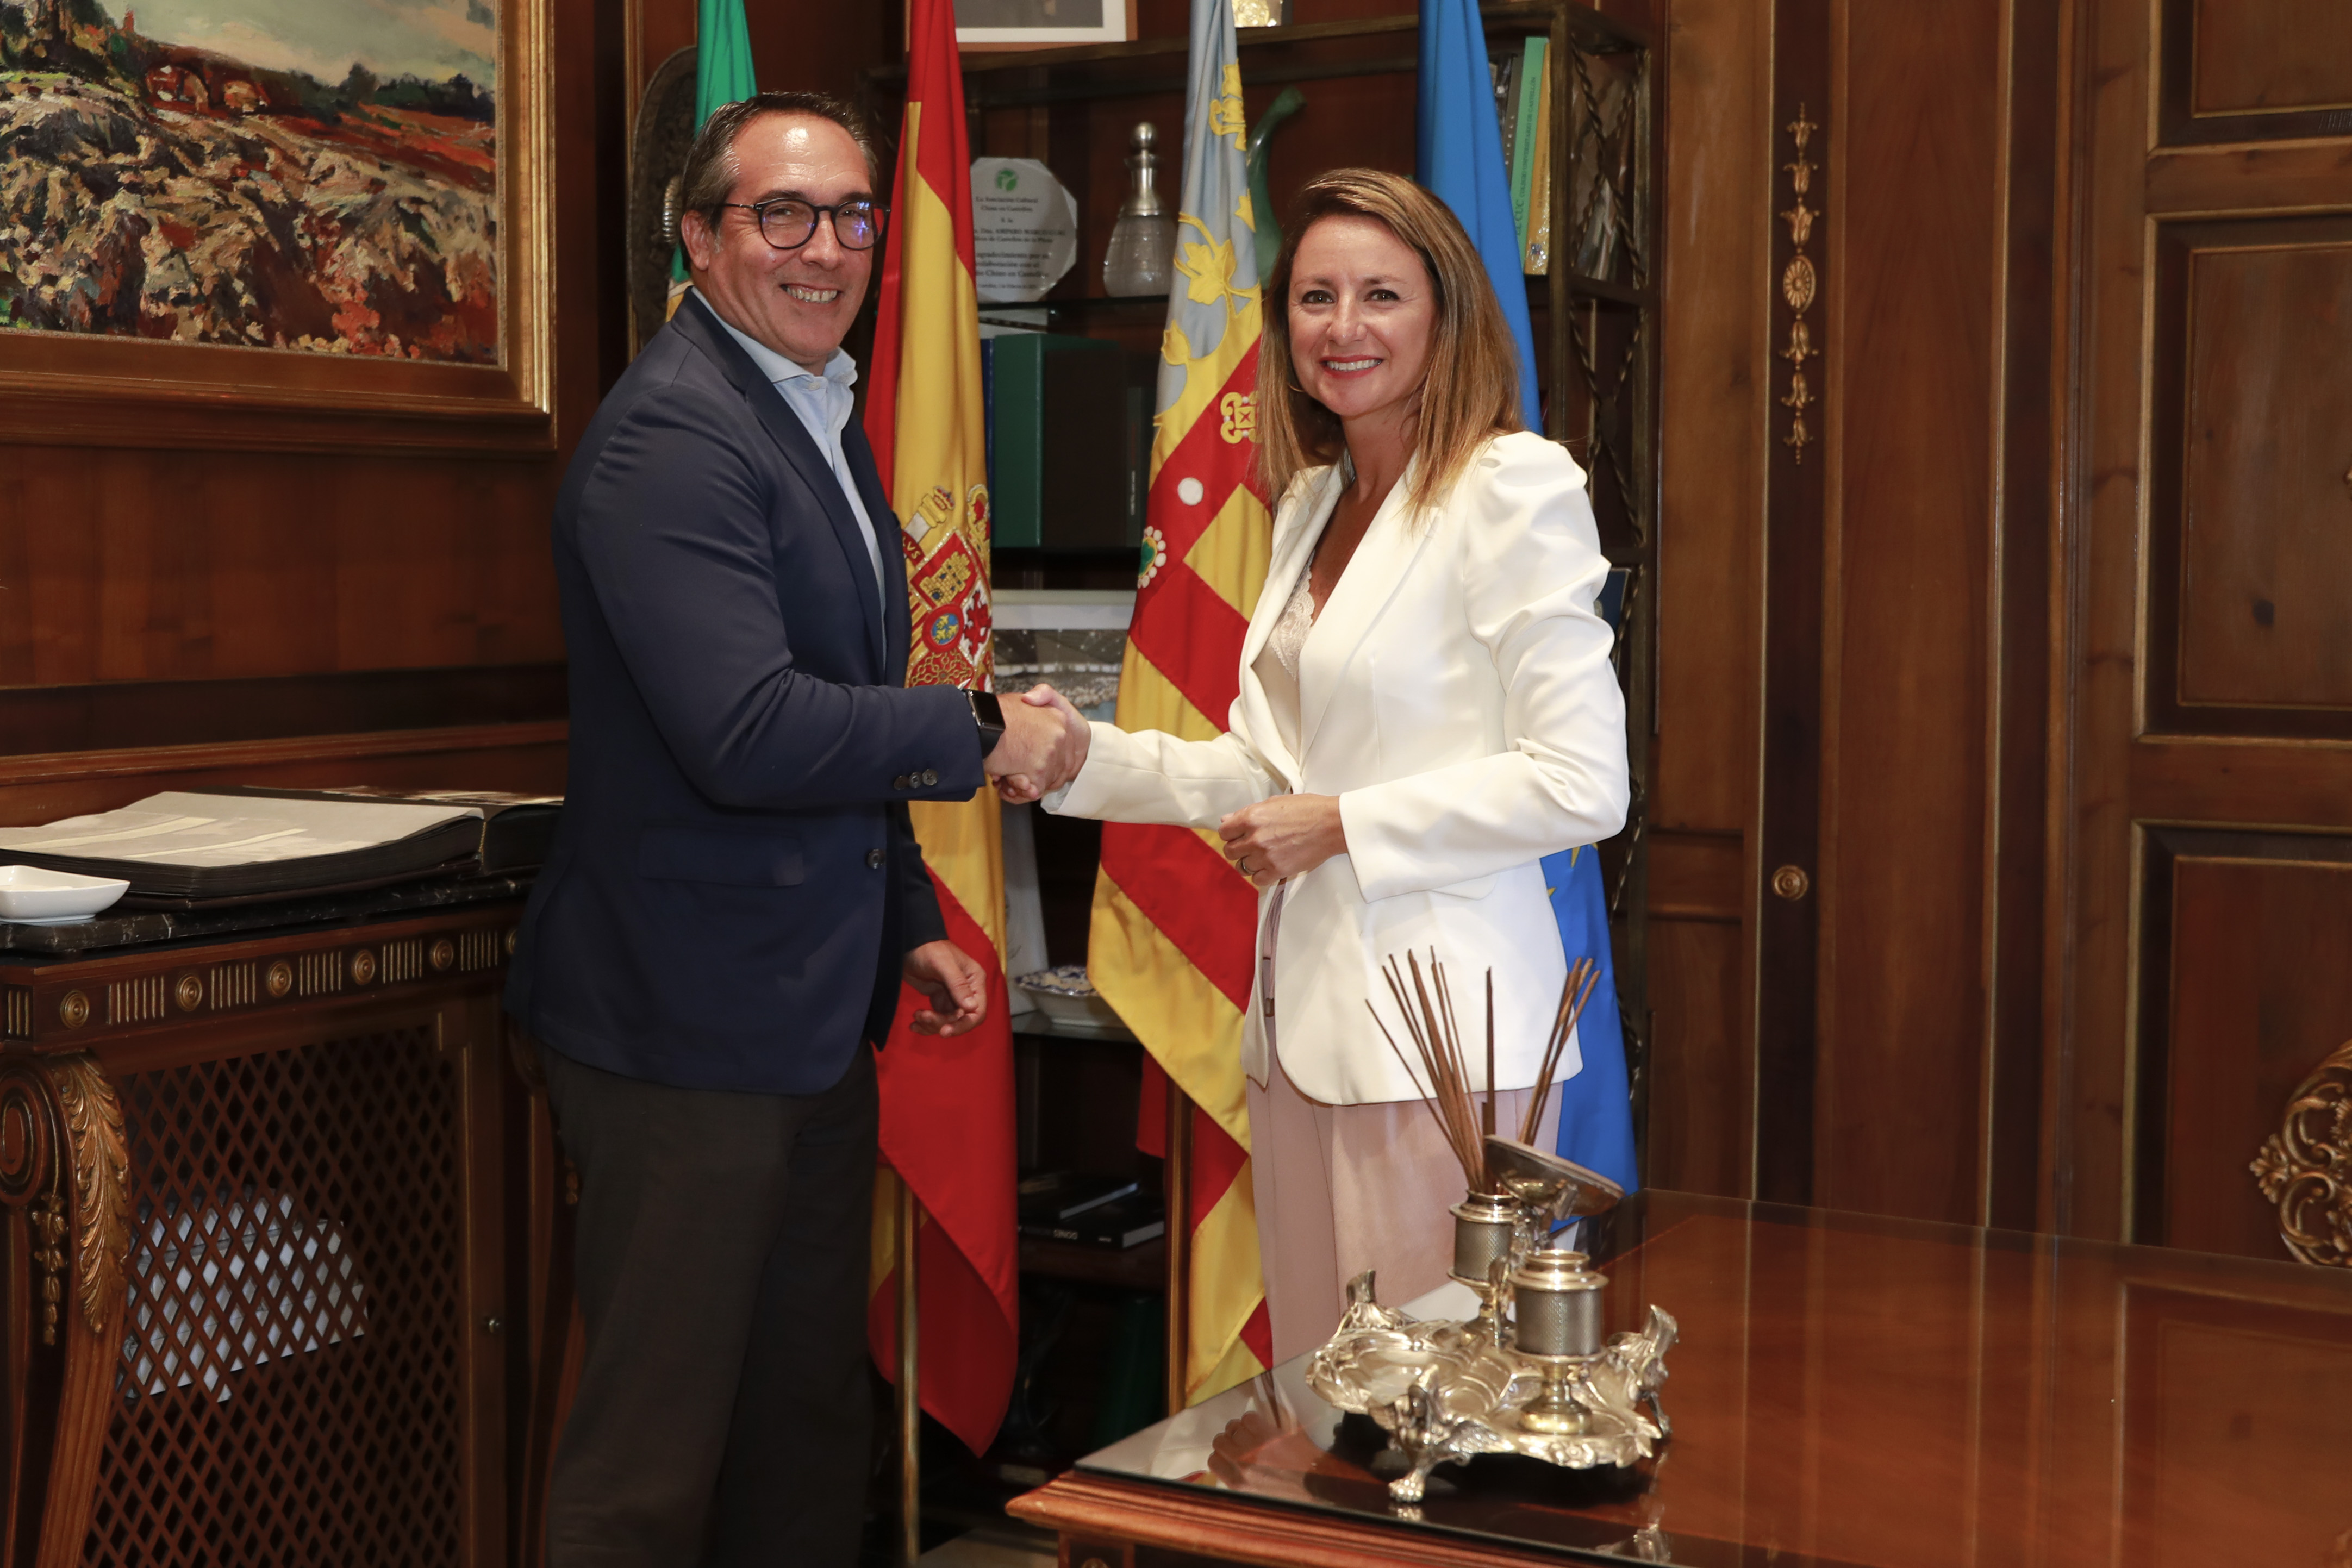 La alcaldesa anuncia junto al nuevo presidente de la Autoridad Portuaria el compromiso mutuo de fortalecer la relación Puerto-ciudad para contribuir al impulso económico de Castellón